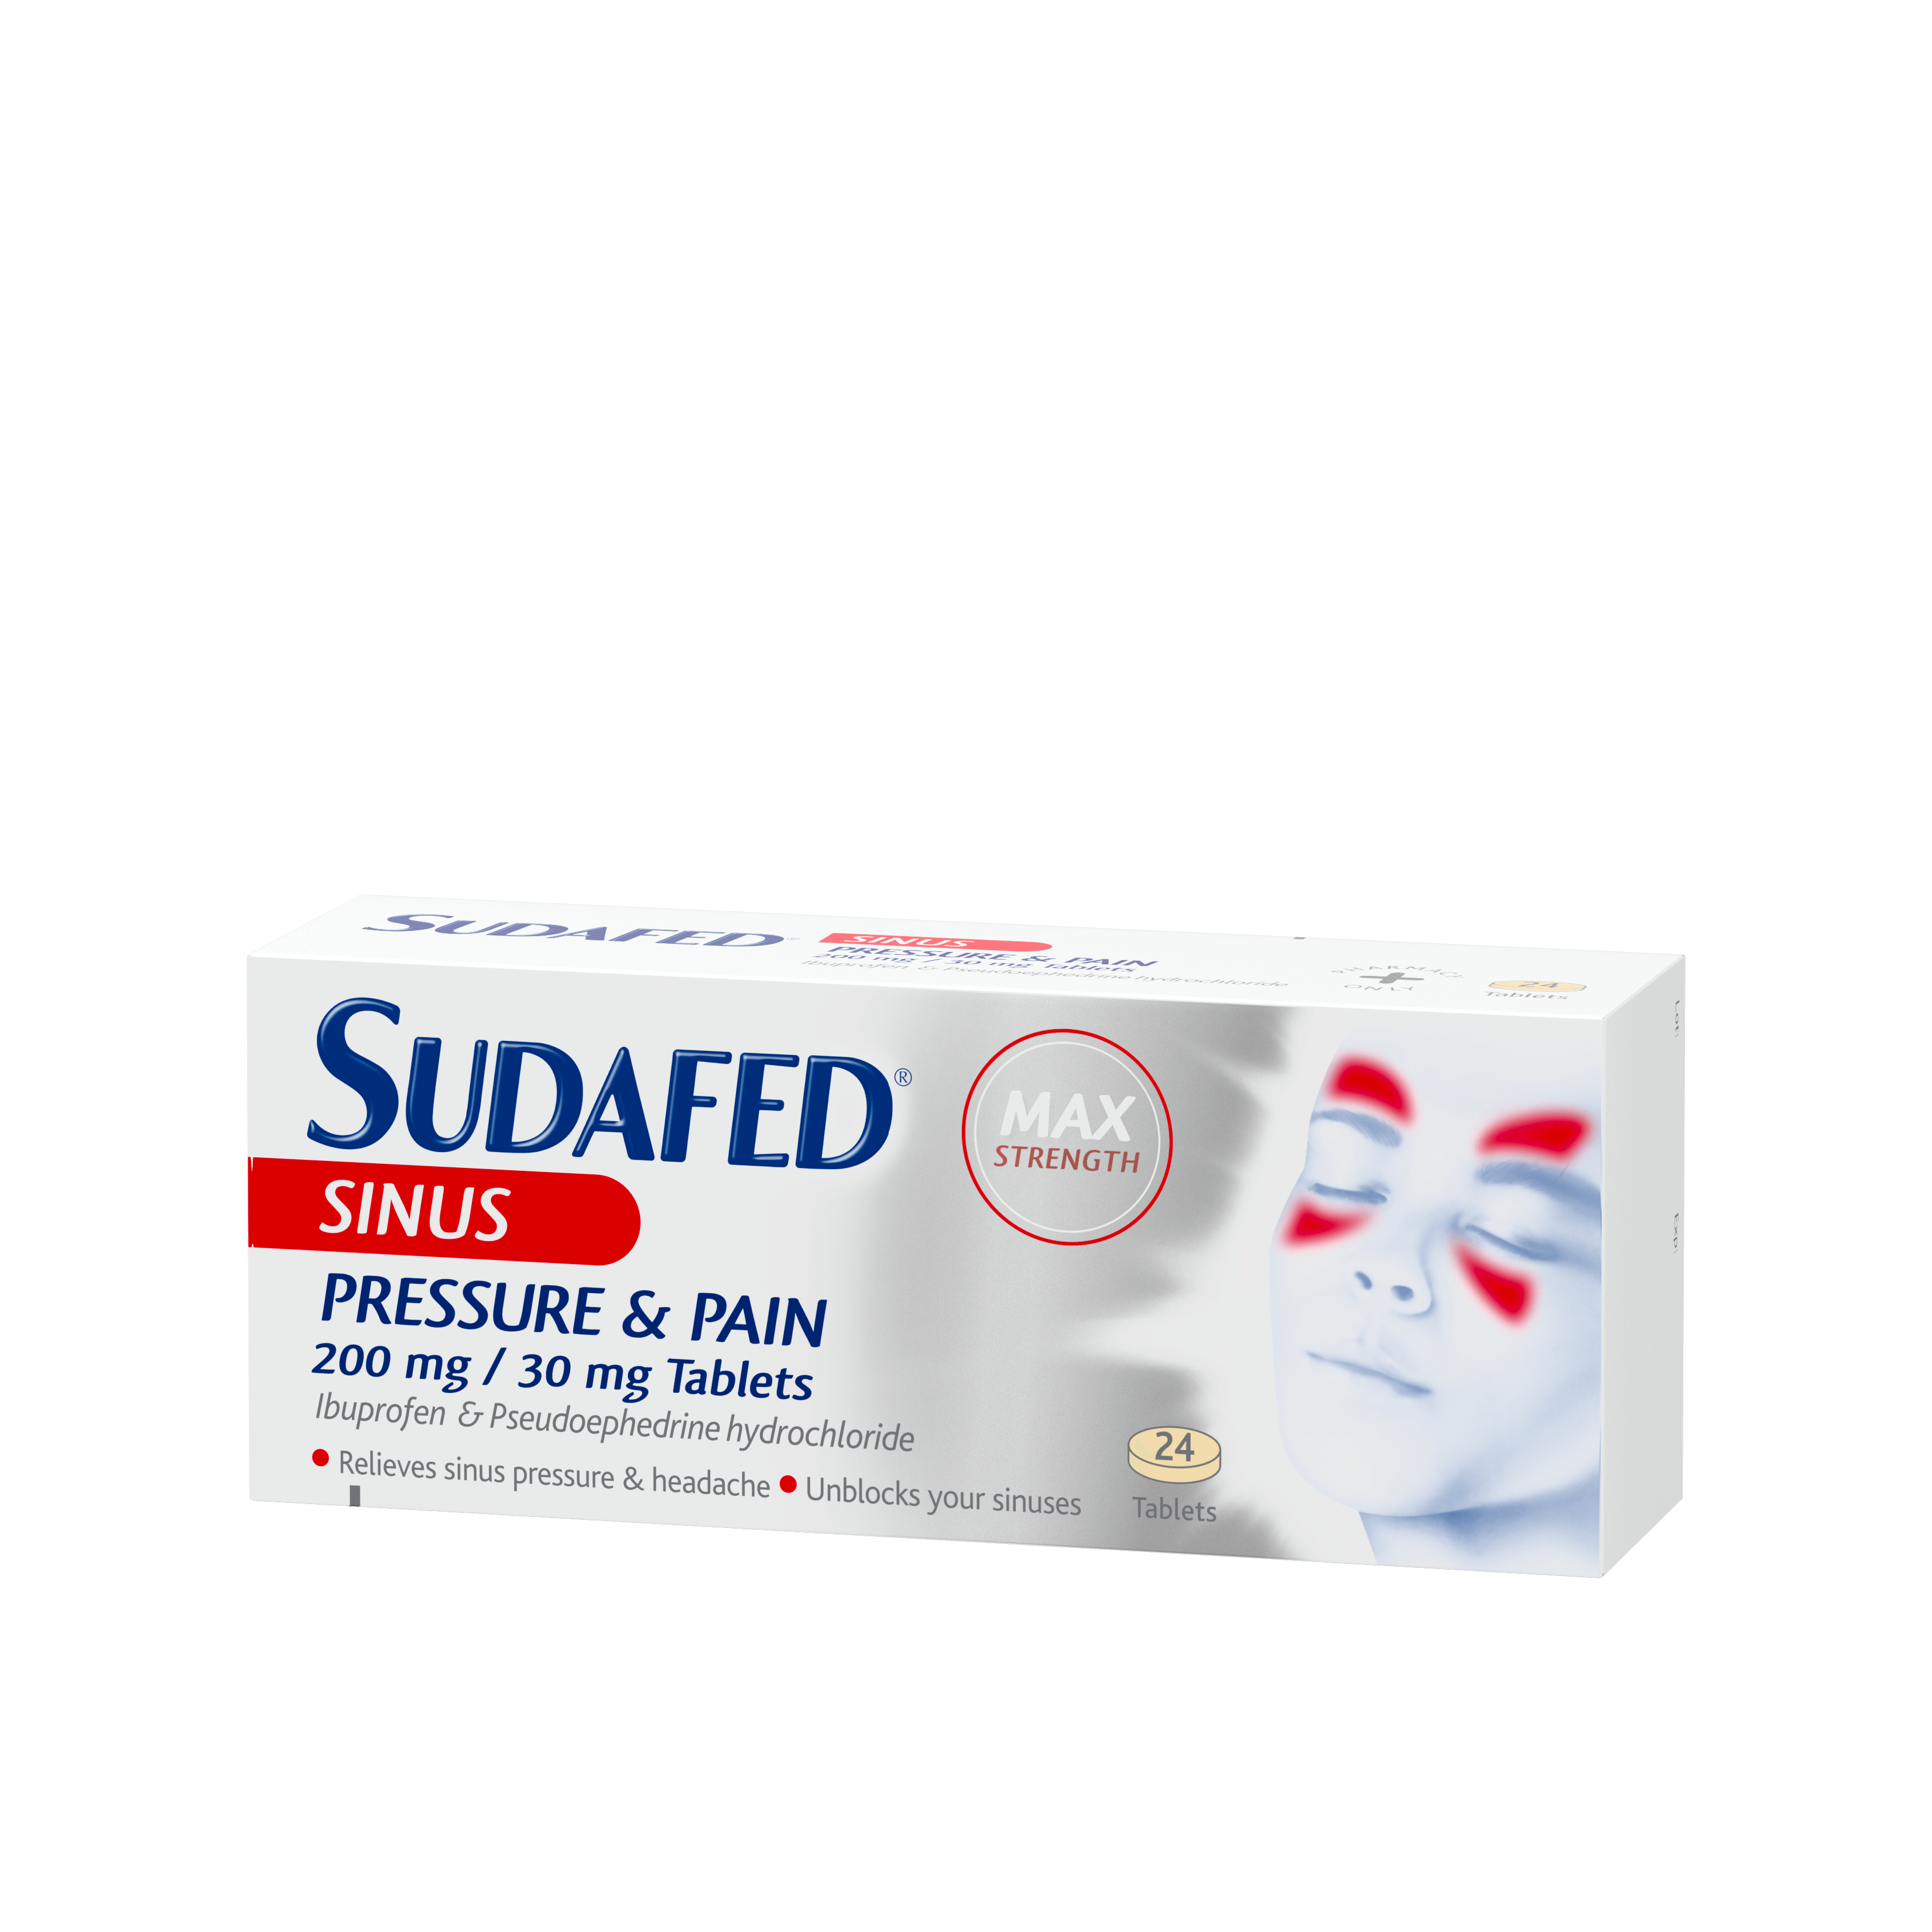 SUDAFED® Sinus Pressure & Pain Tablets